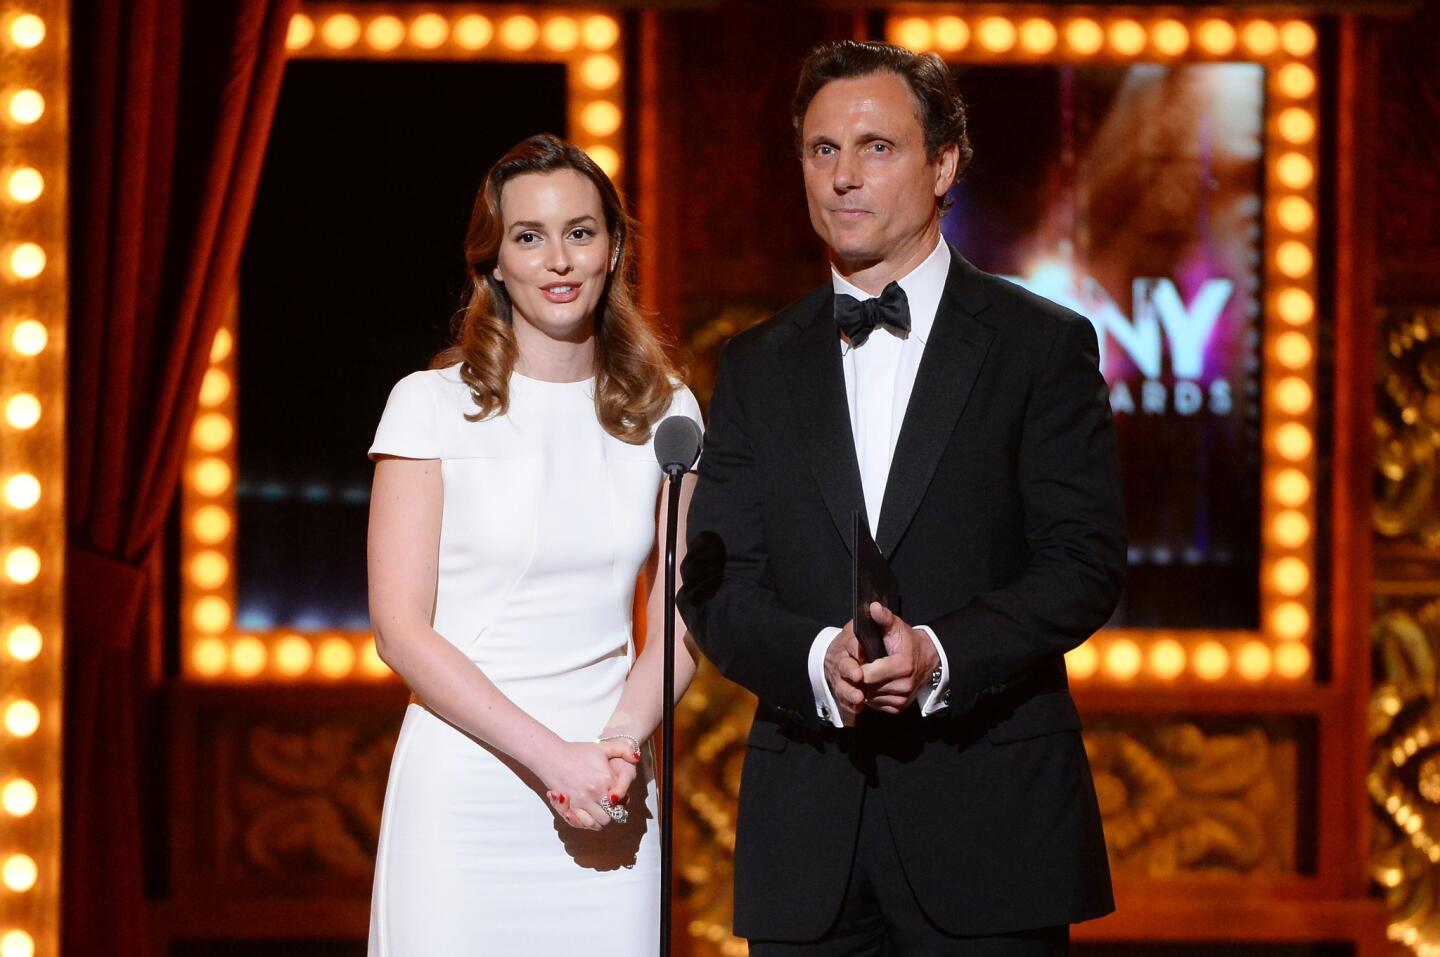 2014 Tony Awards Show